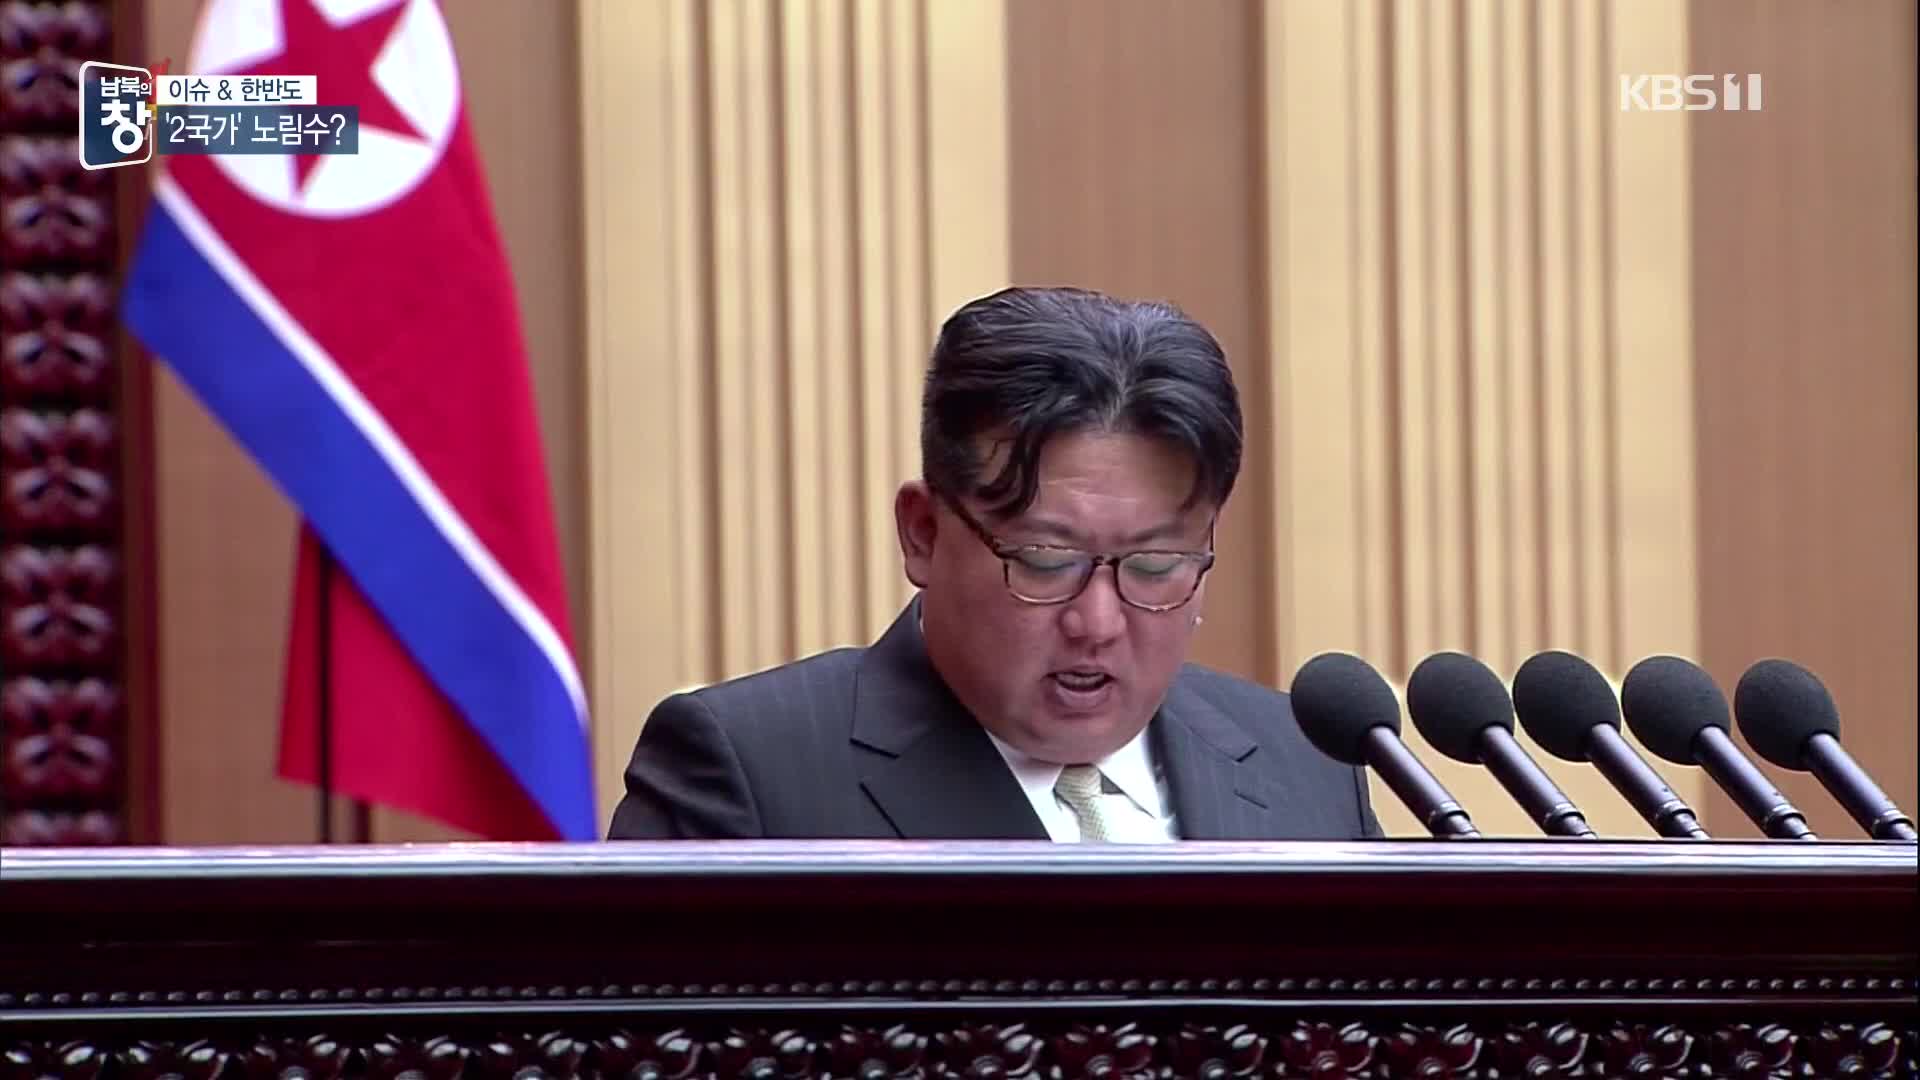 [이슈&한반도] “남북은 두 국가”…북한의 속내는?